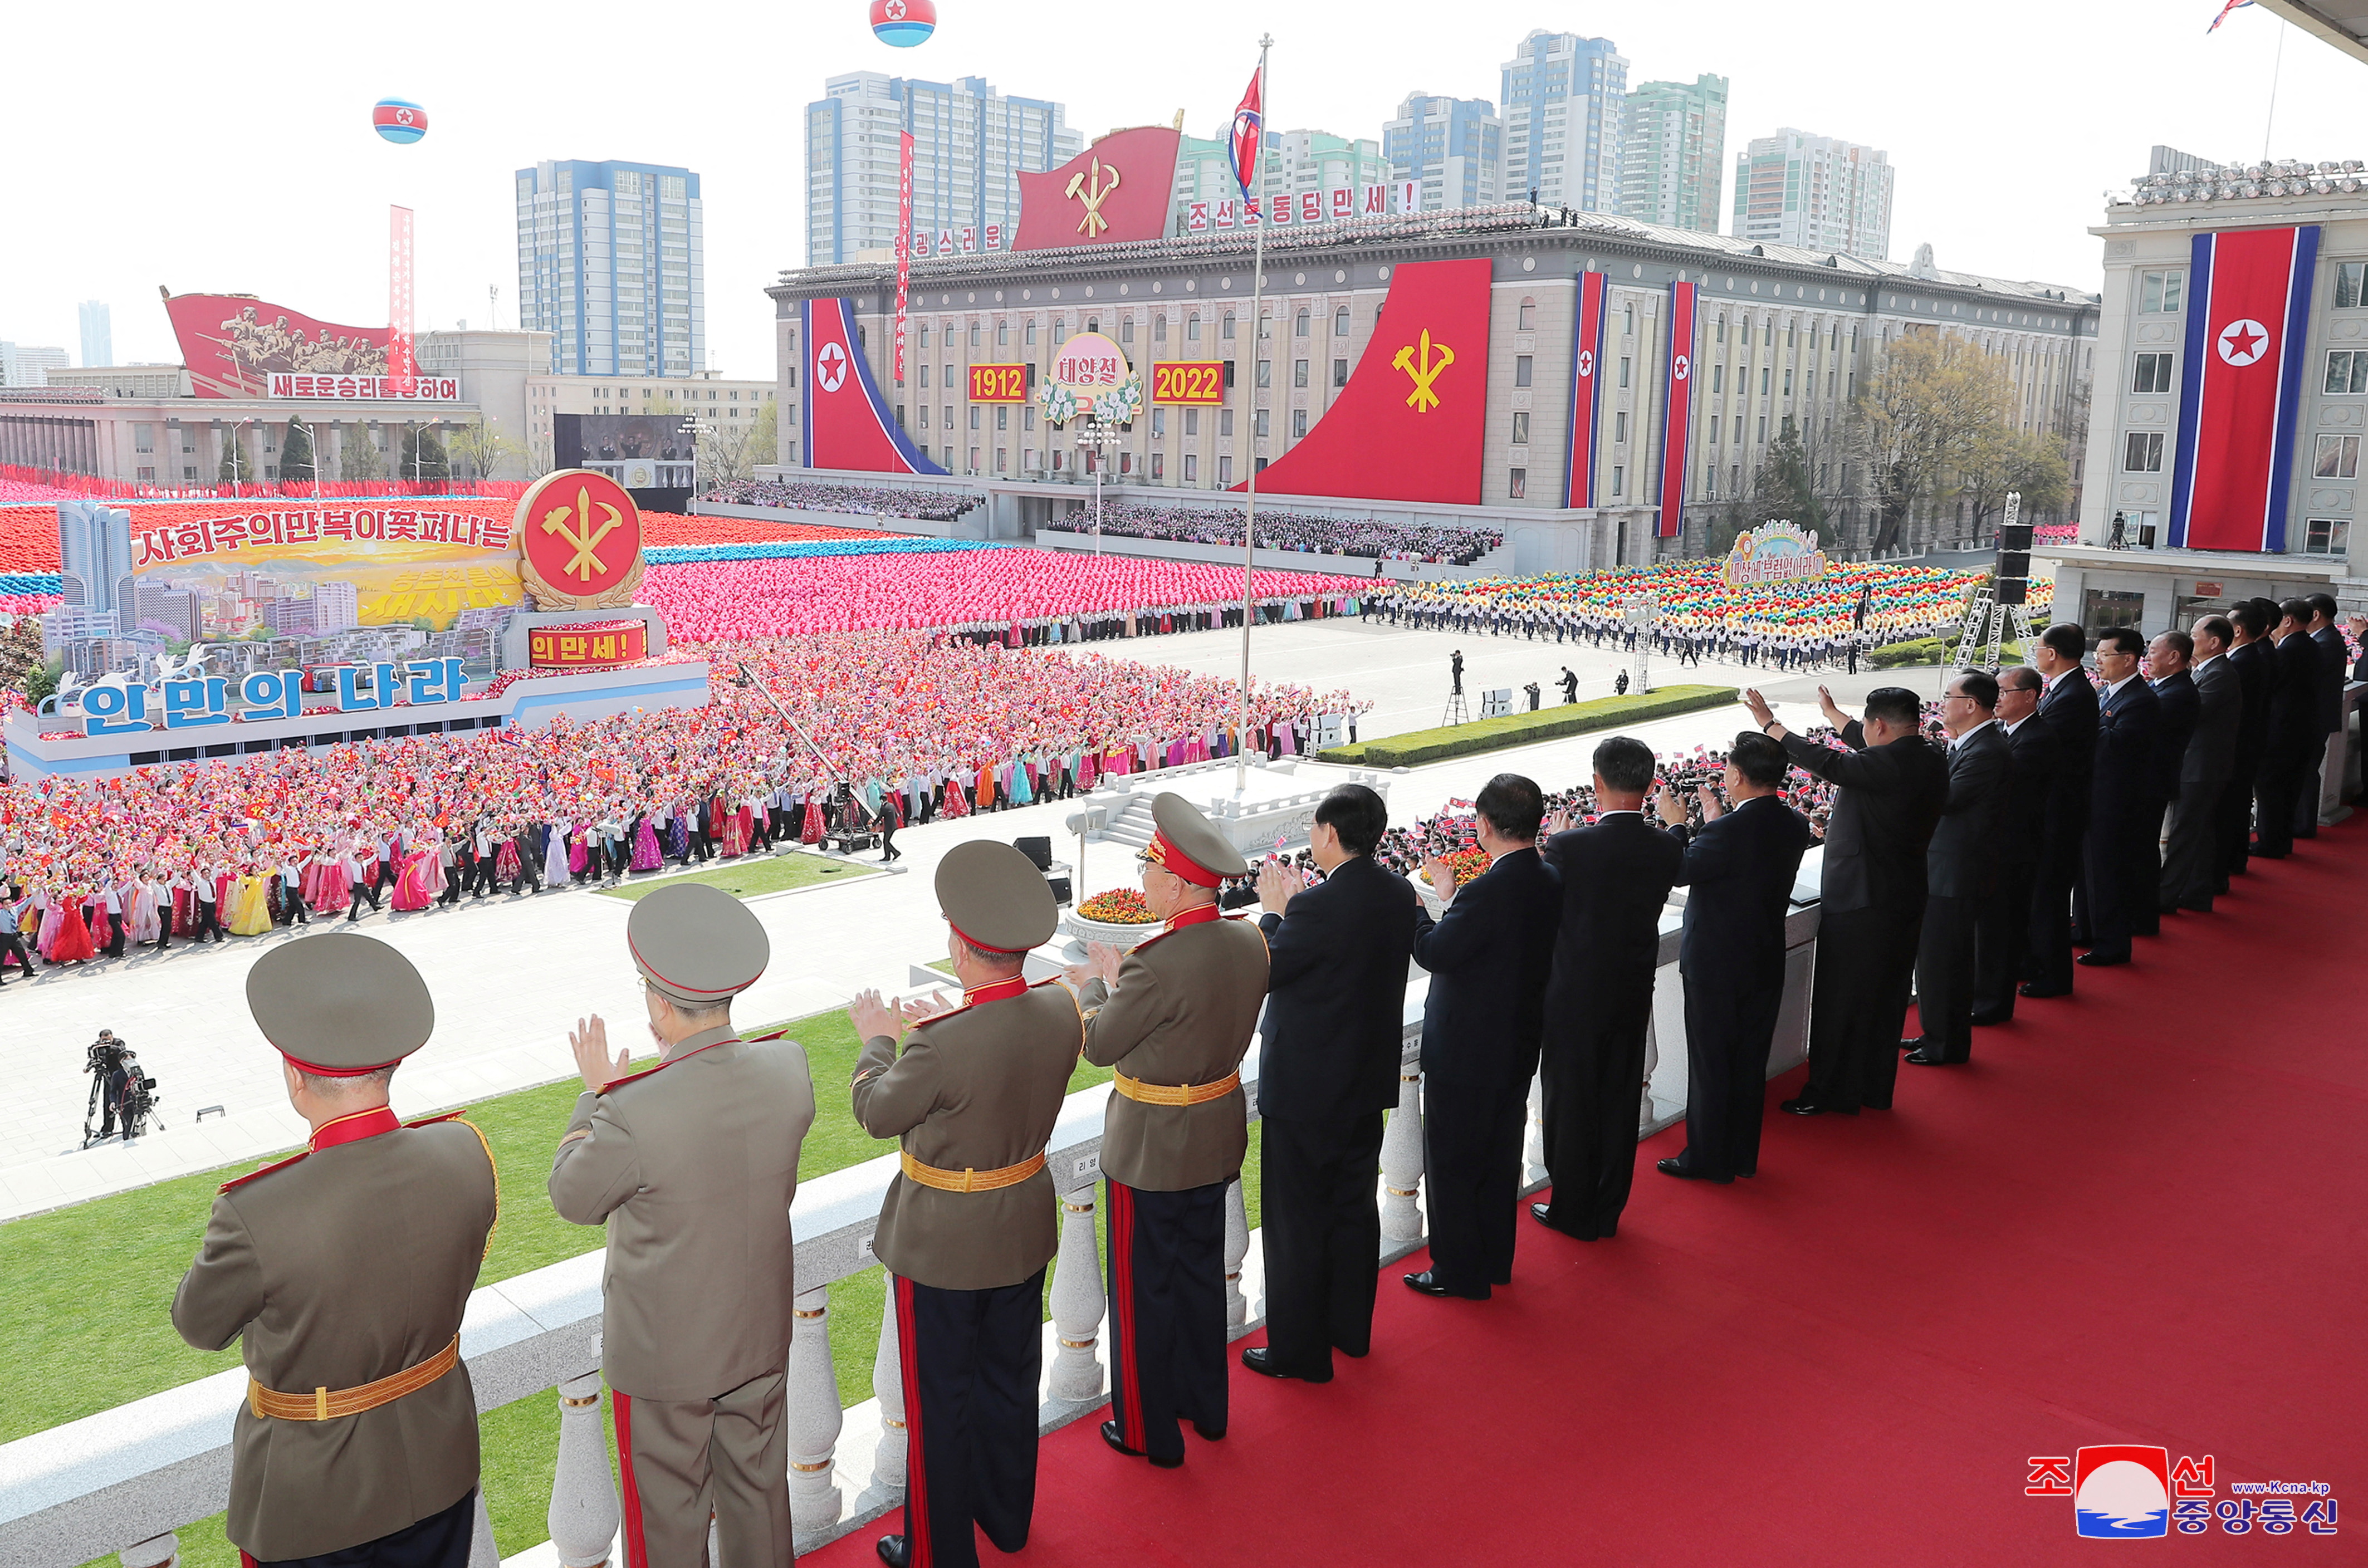 110º aniversario del nacimiento del fundador del Estado, Kim II Sung, en Pyongyang, Corea del Norte, el 15 de abril de 2022. Imagen tomada el 15 de abril de 2022 por la Agencia Central de Noticias de Corea del Norte (KCNA). KCNA vía REUTERS